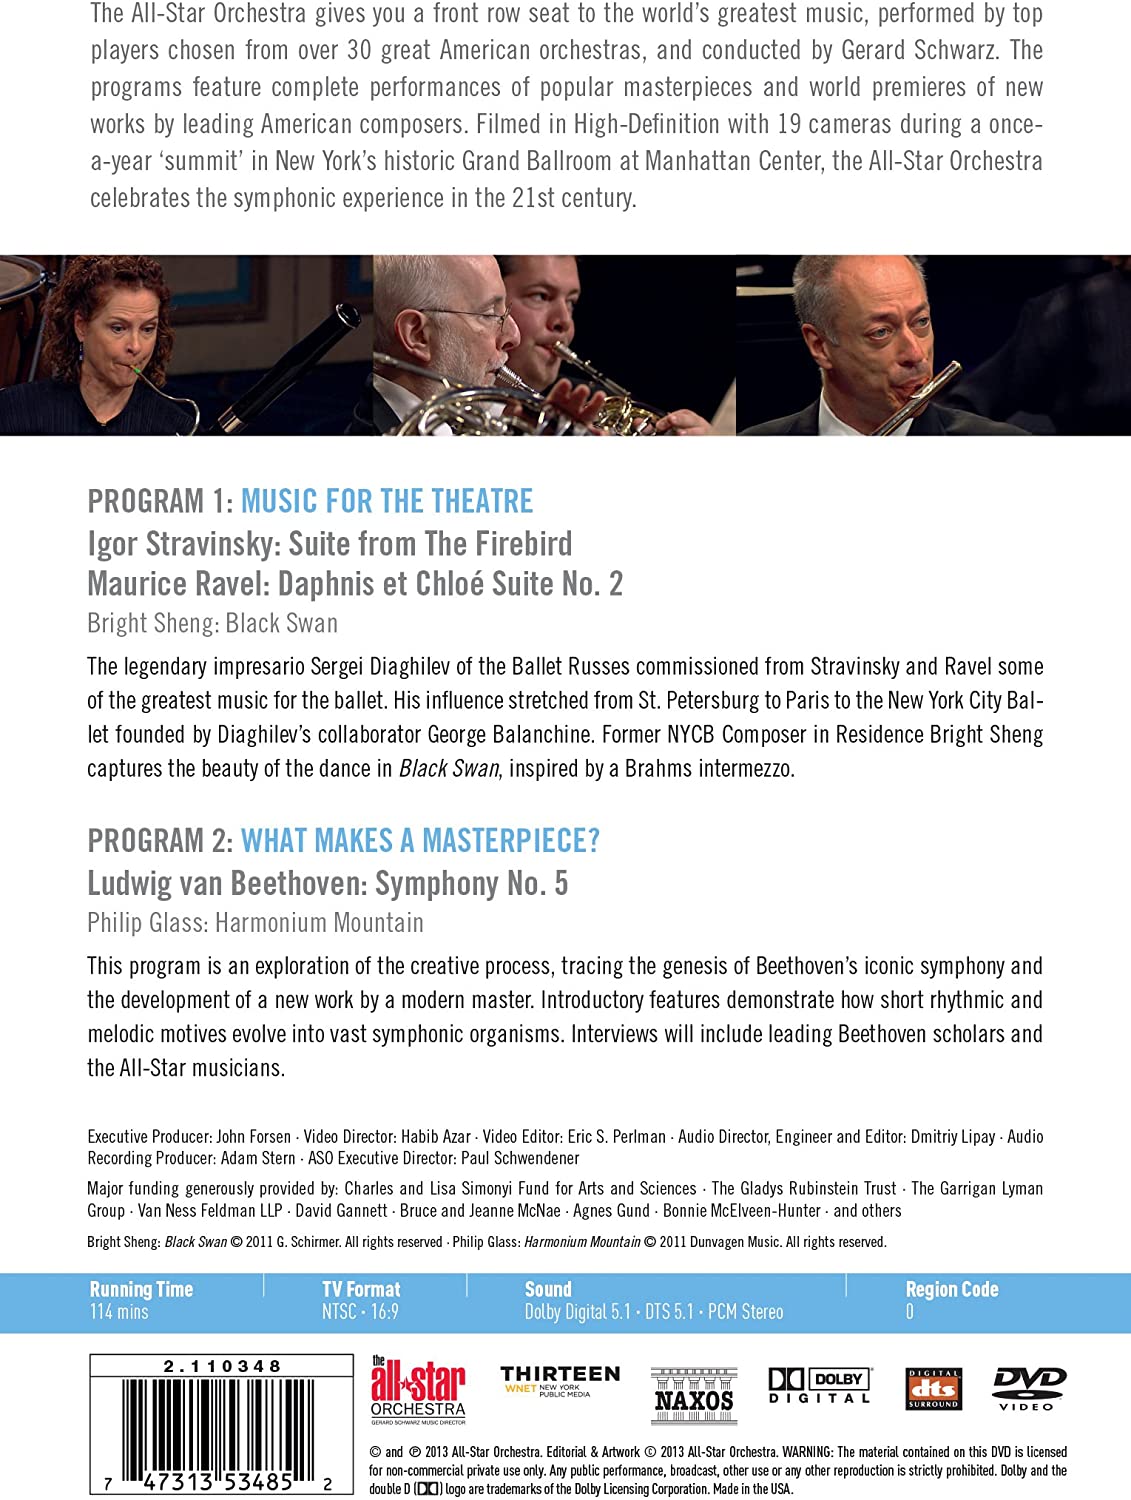 The All-Star Orchestra Programs 1 & 2: Beethoven, Stravinsky, Ravel, Glass - slide-1